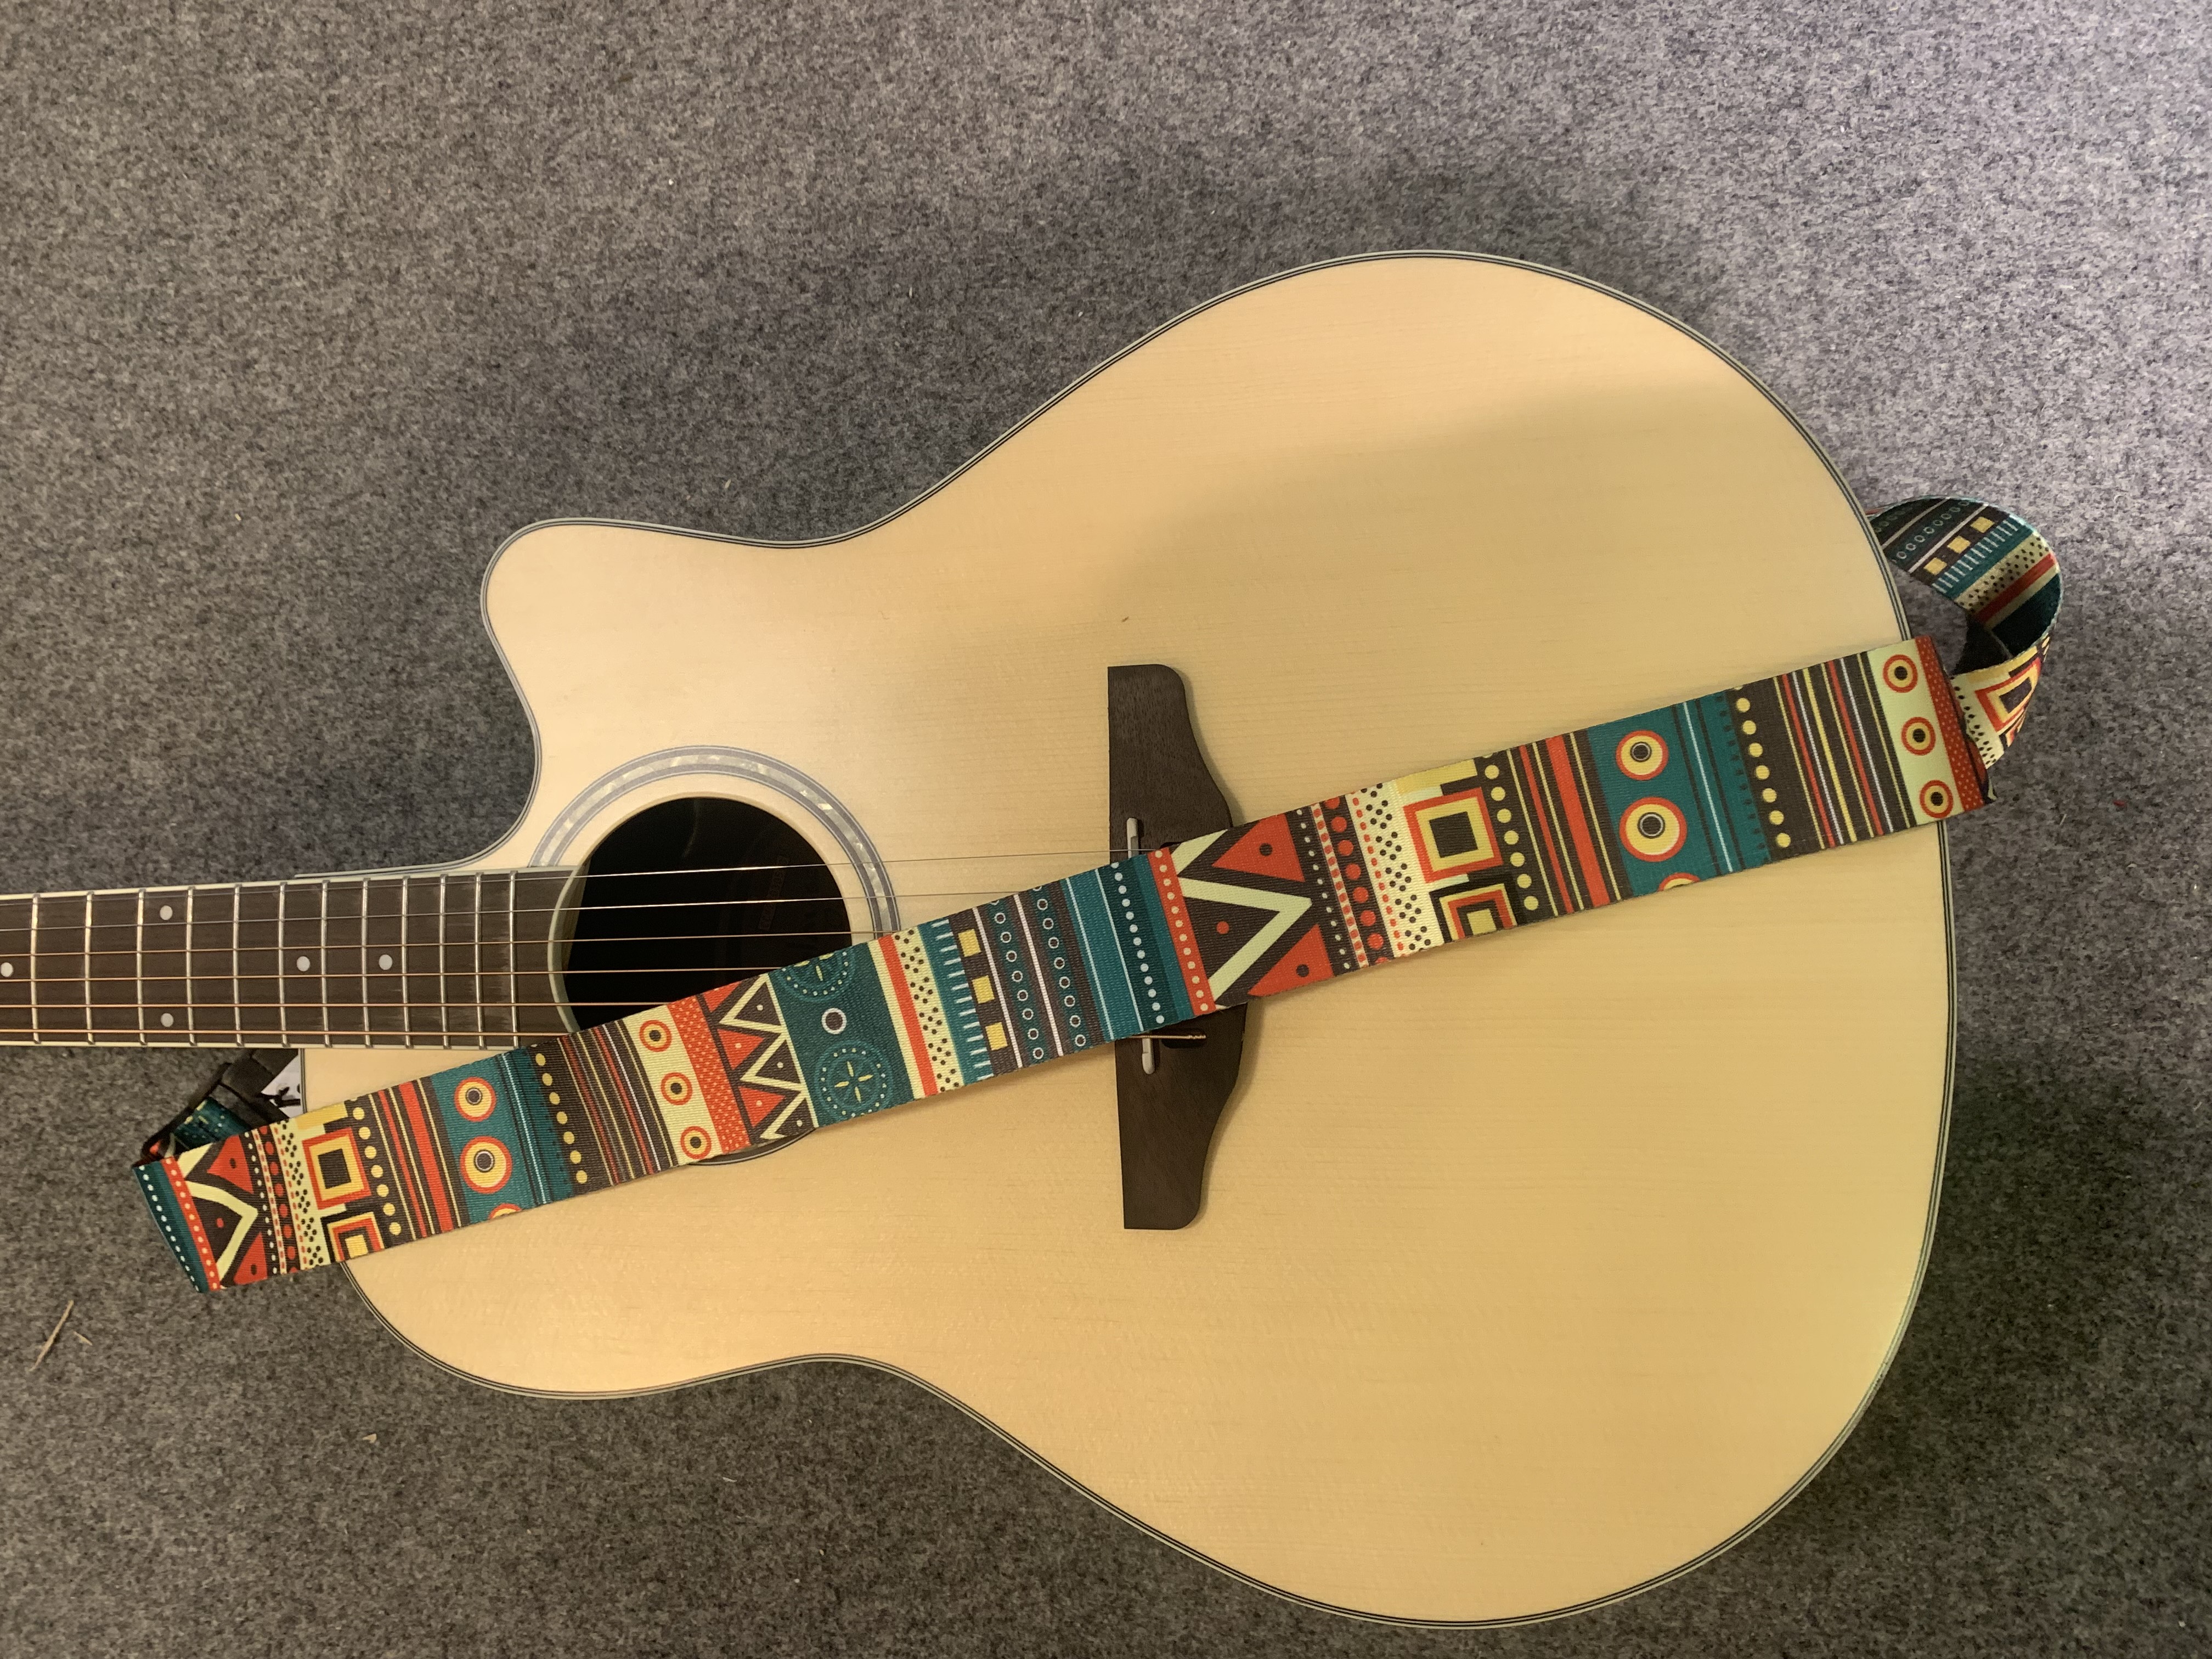 Umhängegurt 5 cm Breit für: Gitarre-Ukulele-Banjo